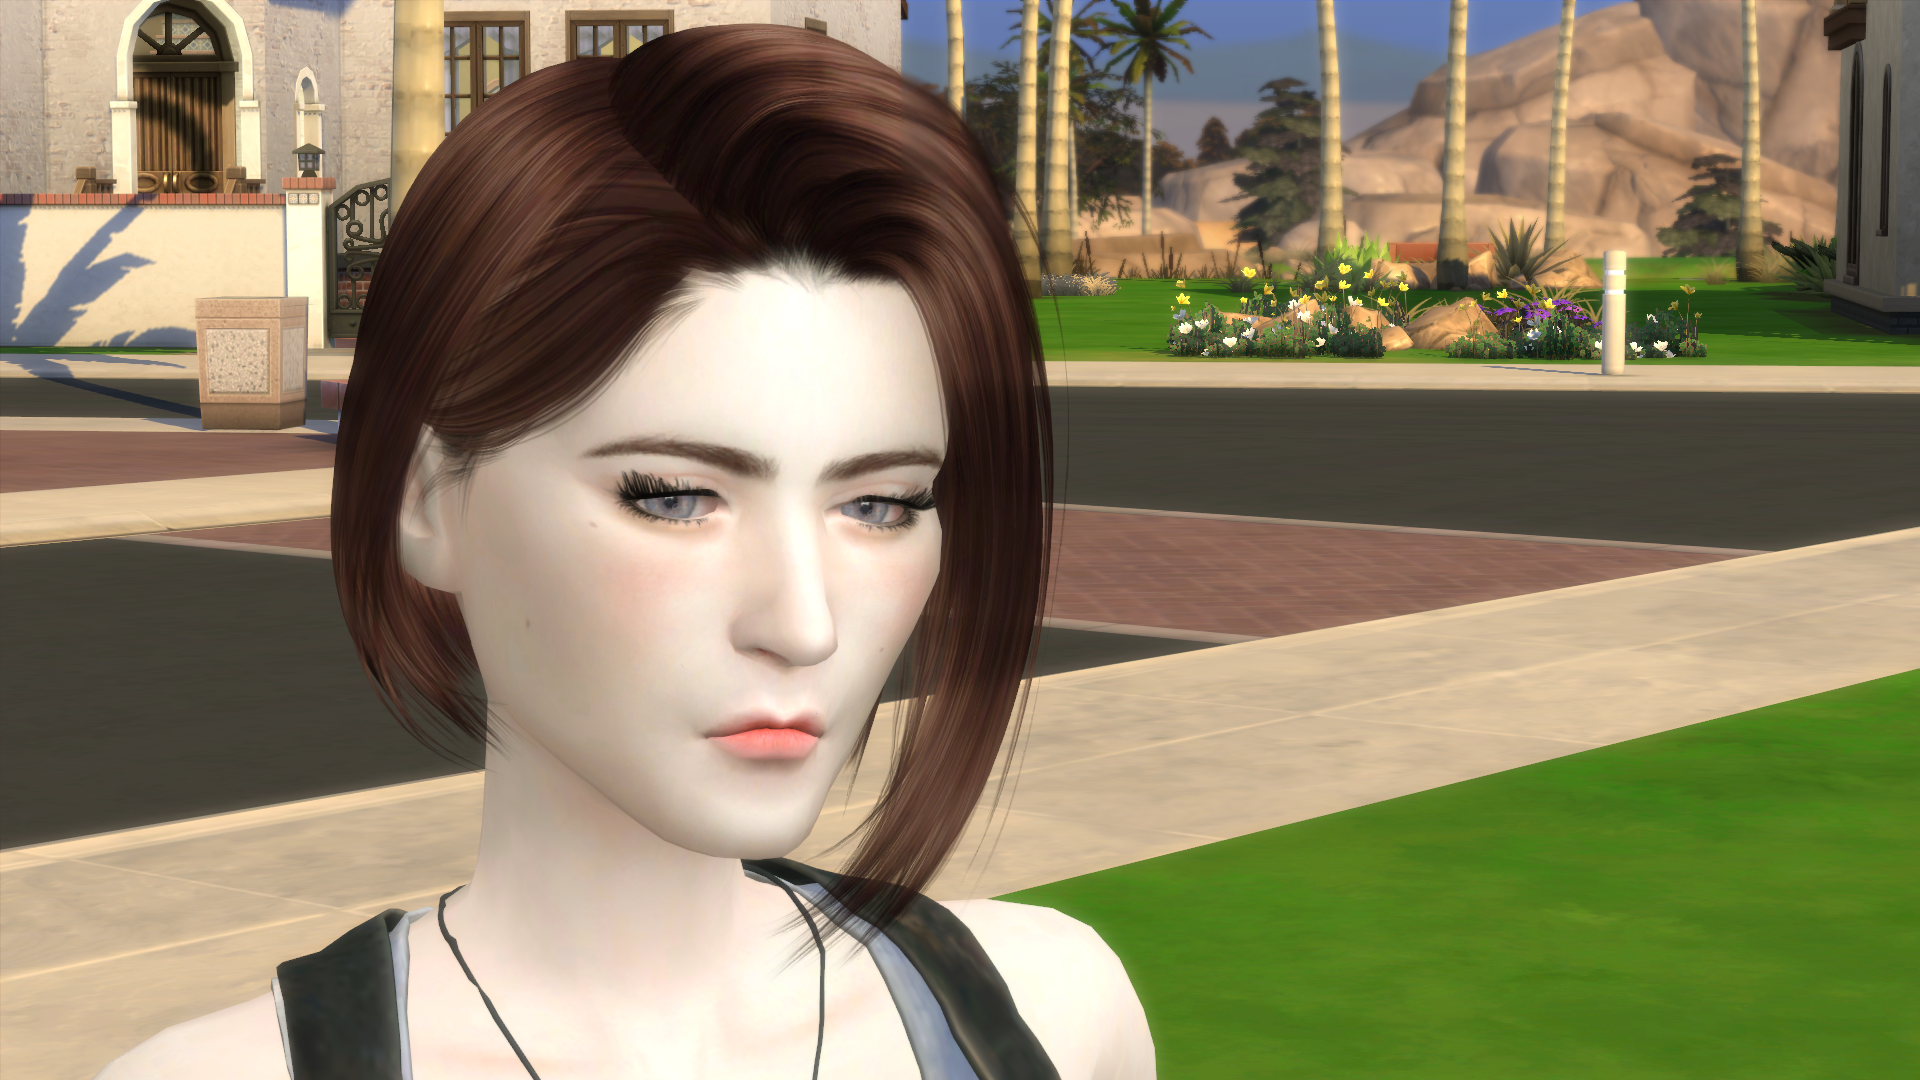 Sims 4 Jill Valentine Hair